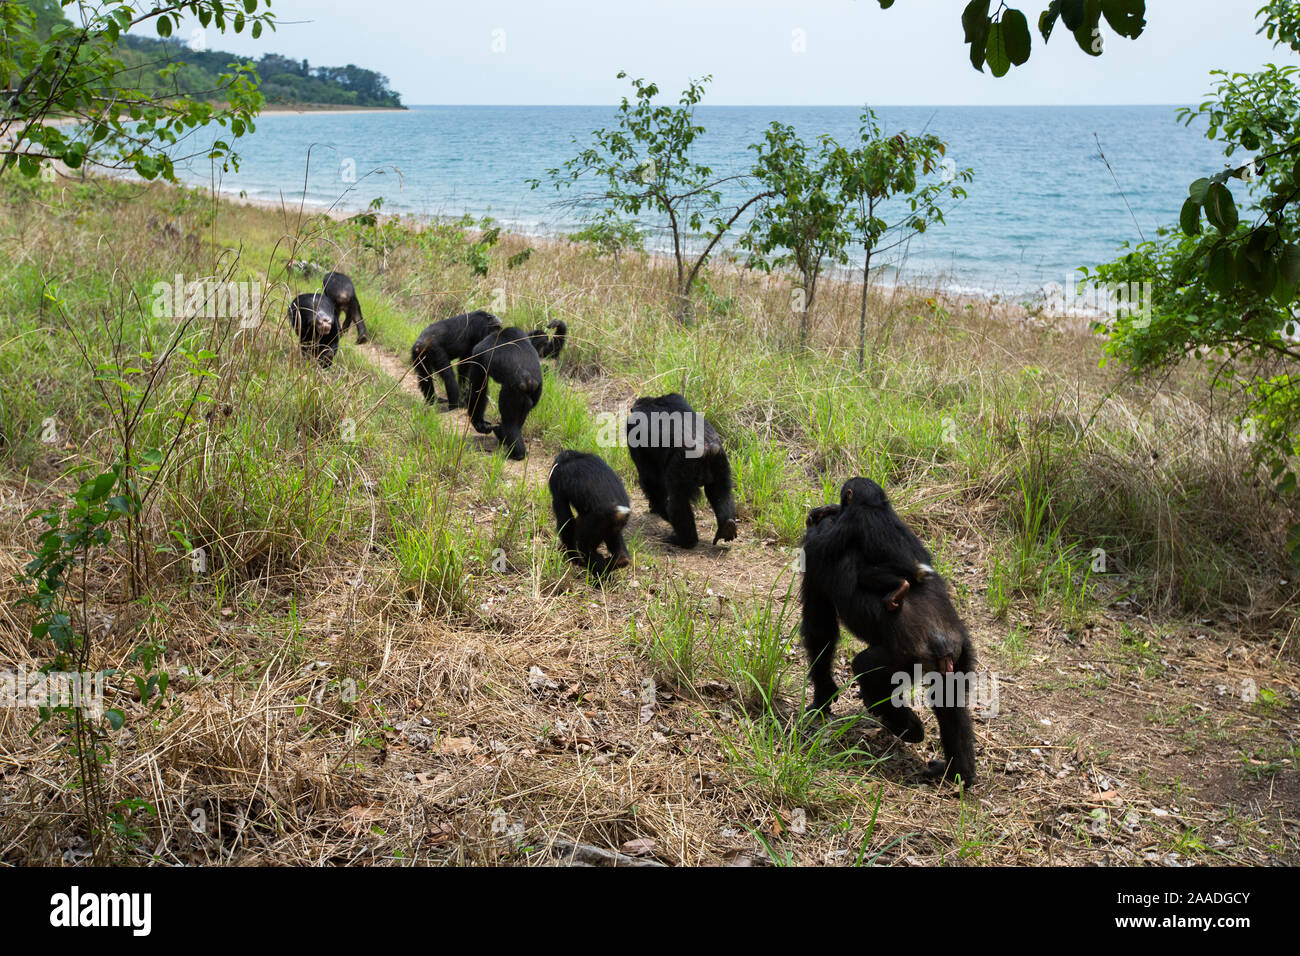 L'Est de chimpanzés (Pan troglodytes) schweinfurtheii marcher dans la ligne près de la rive du lac Tanganyika. Le Parc National de Gombe, en Tanzanie. Banque D'Images